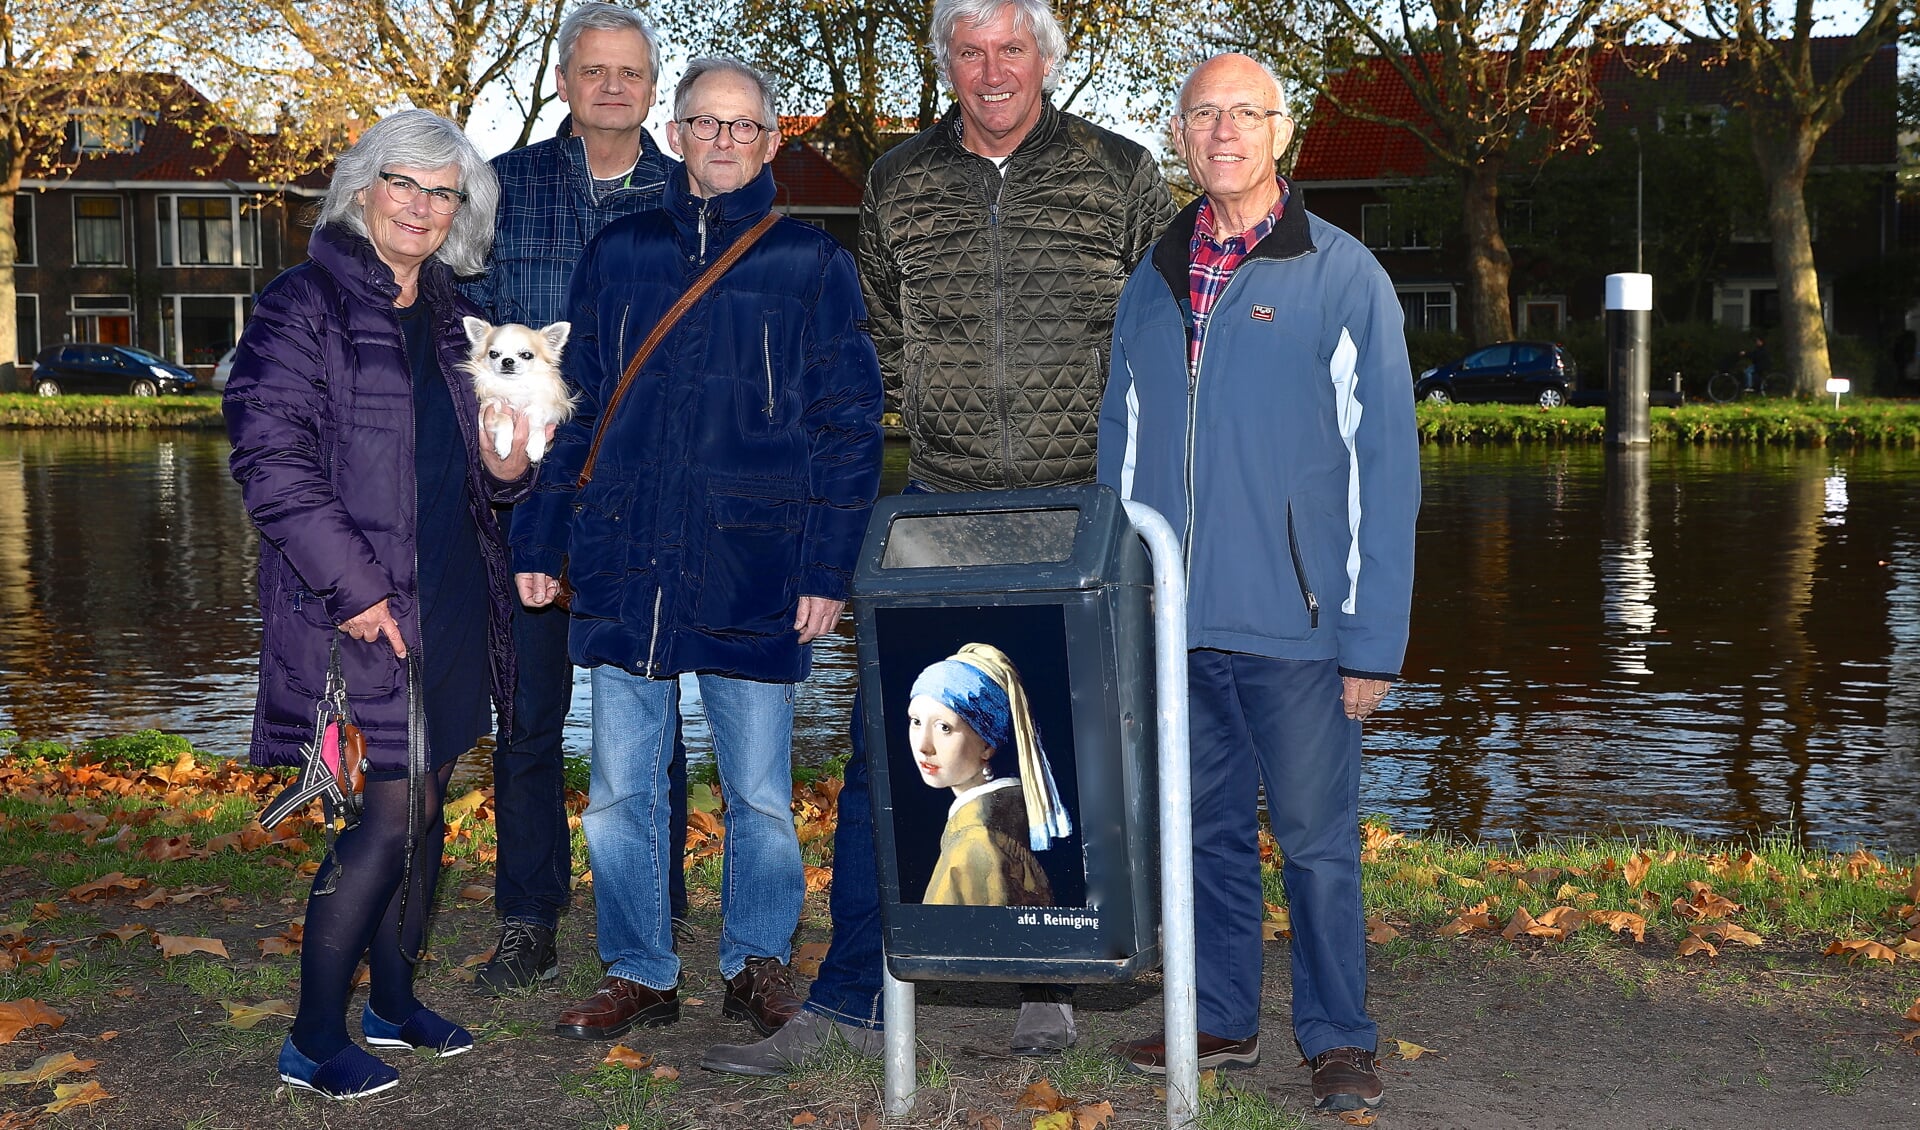 De bewoners van Parel aan de Schie zijn blij met hun Vermeervuilnisbak, maar hun sympathieke idee kan niet op ieders goedkeuring rekenen. (foto: Koos Bommelé)